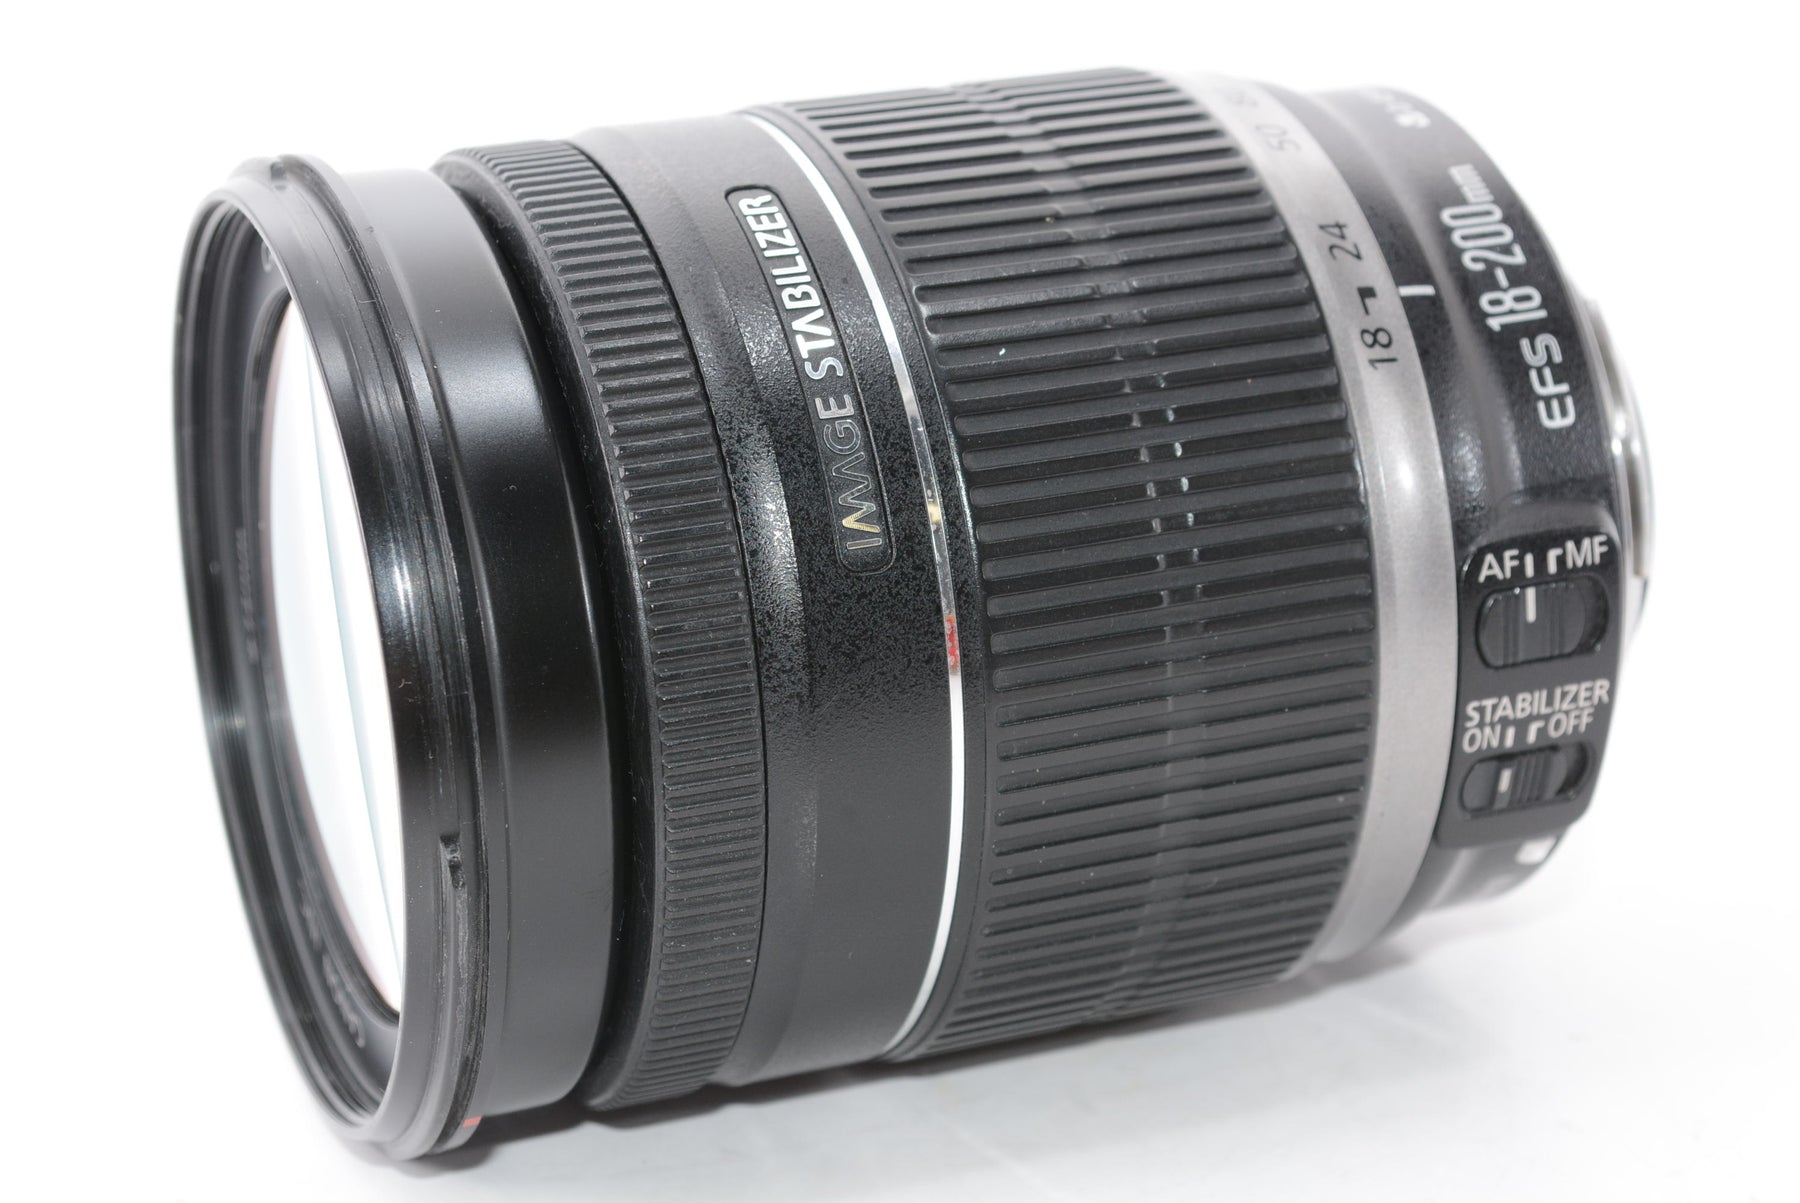 【外観並級】Canon 望遠ズームレンズ EF-S18-200mm F3.5-5.6 IS APS-C対応